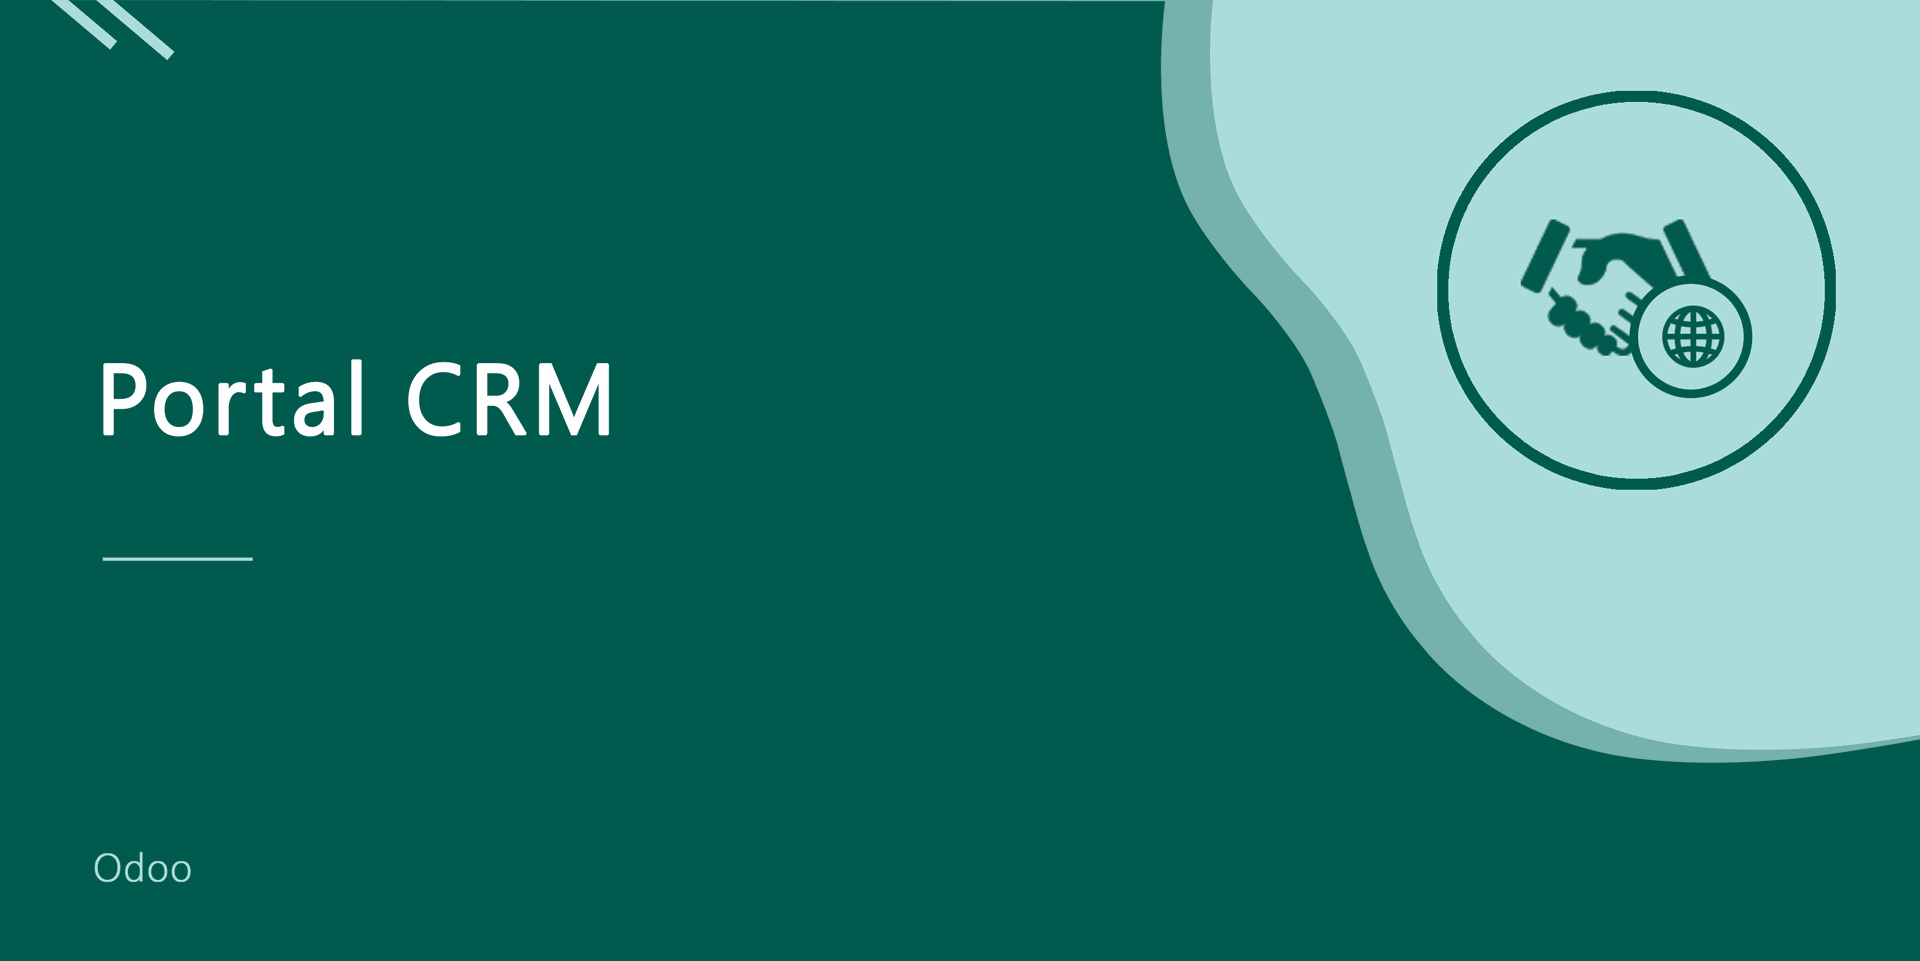 Portal CRM
